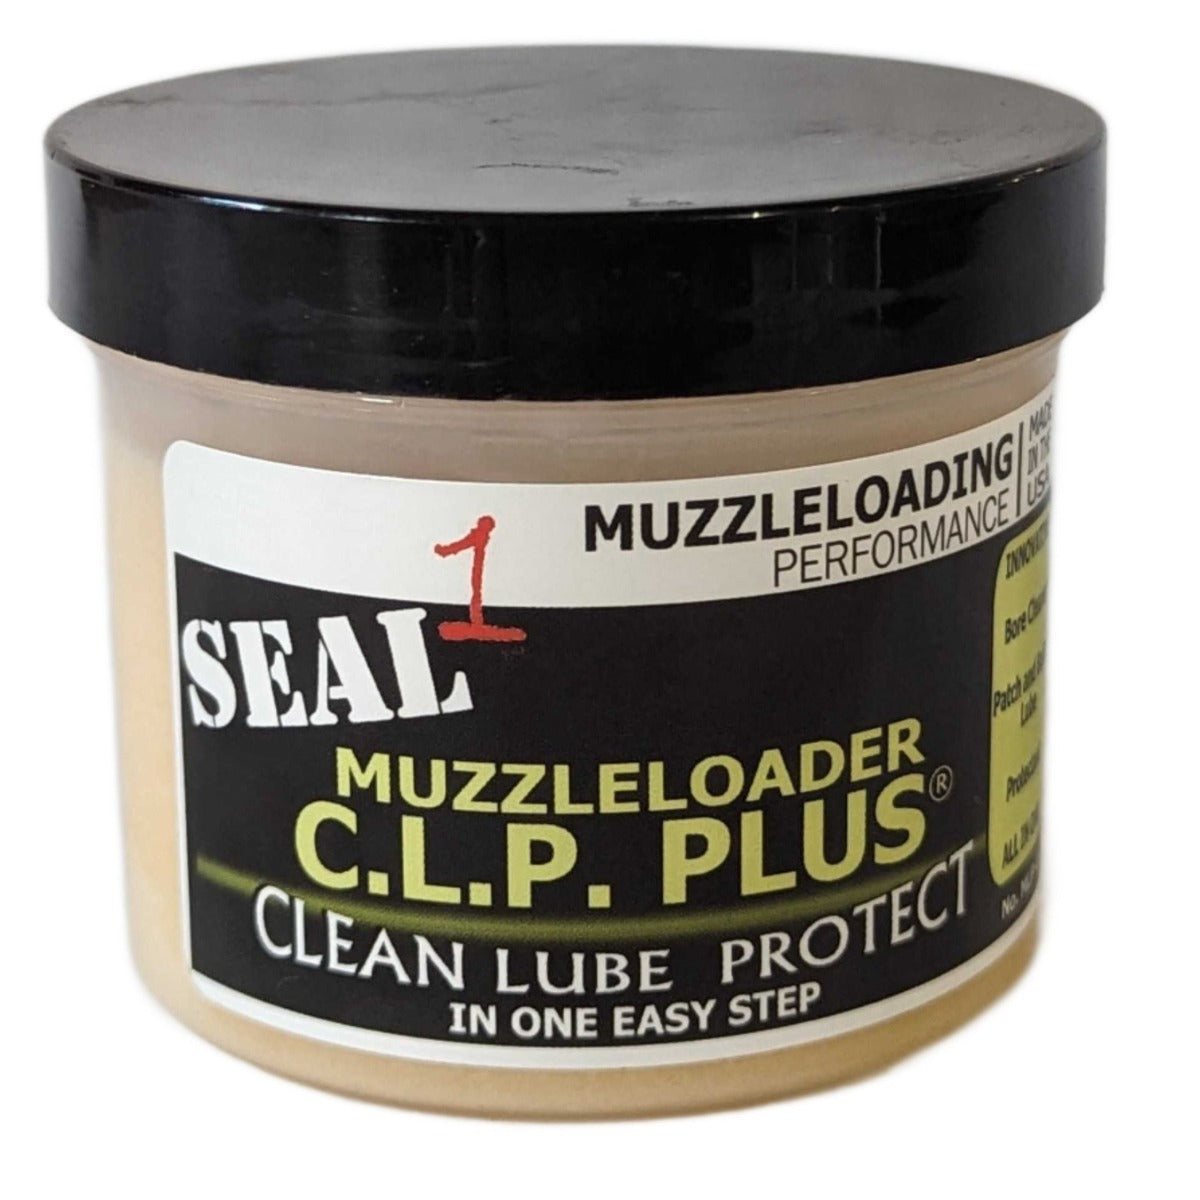 SEAL 1™ Muzzleloader